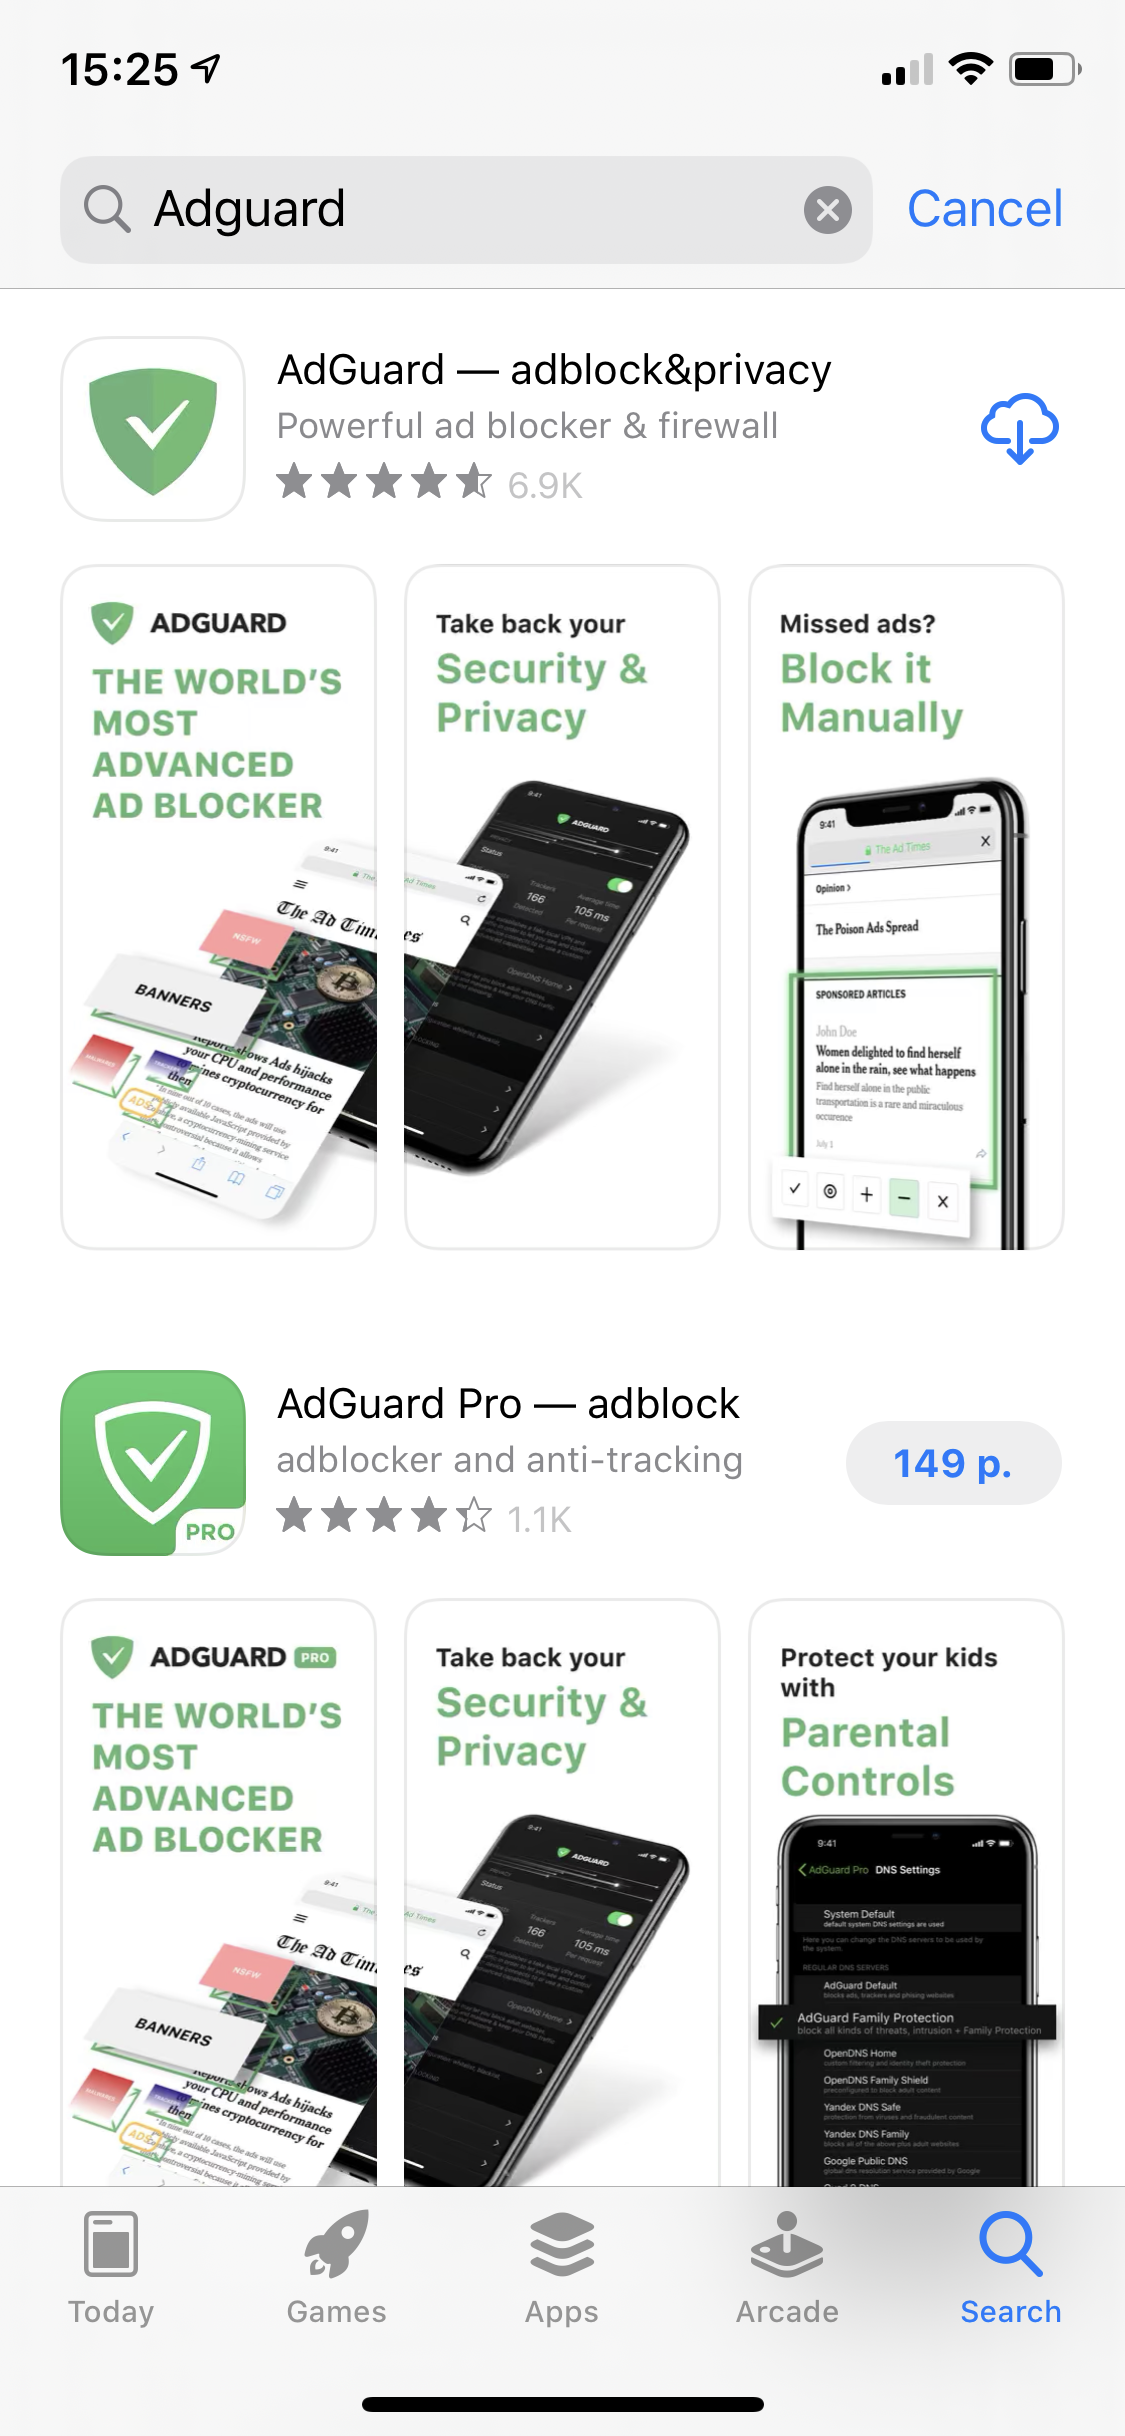 Нажмите СКАЧАТЬ под приложением AdGuard *mobile_border